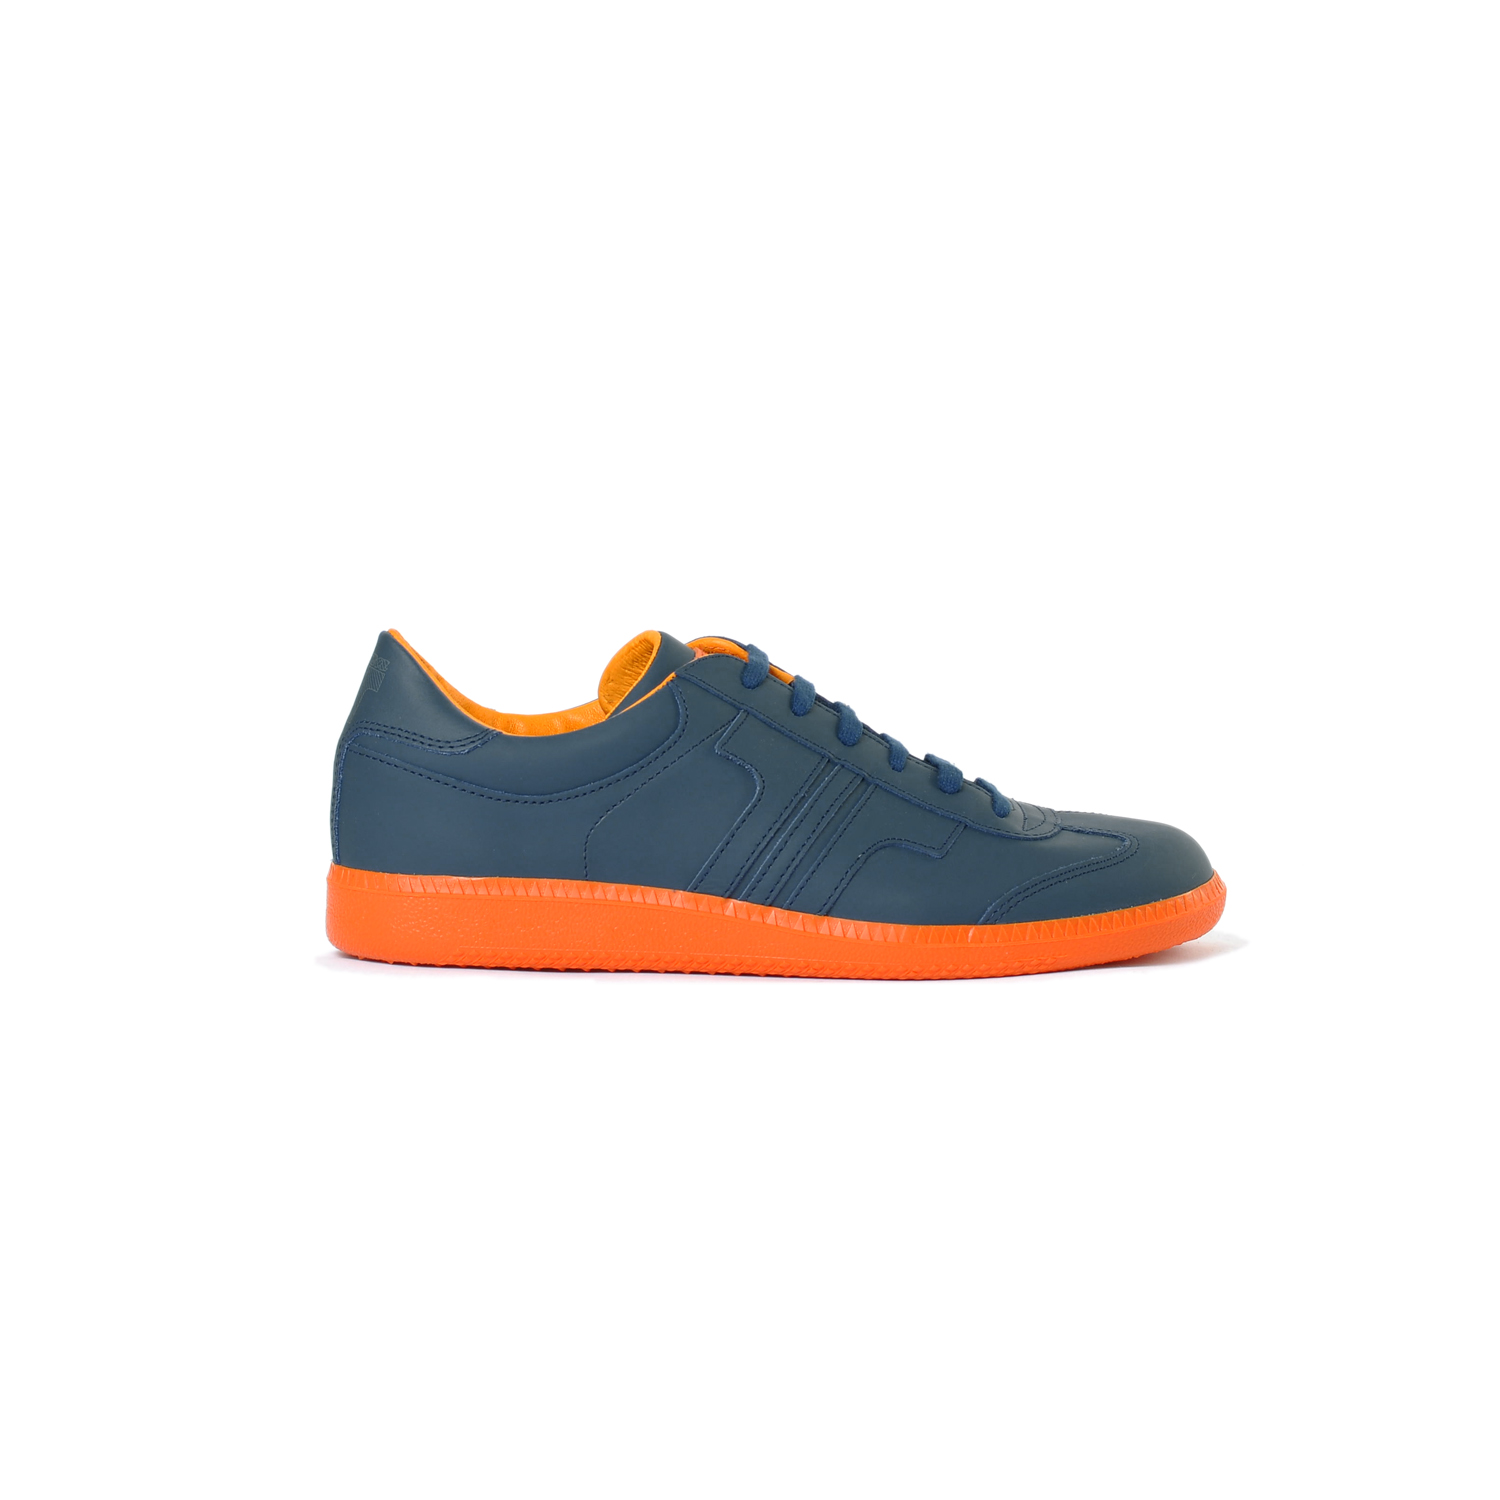 Tisza shoes - Compakt - Navy-orange